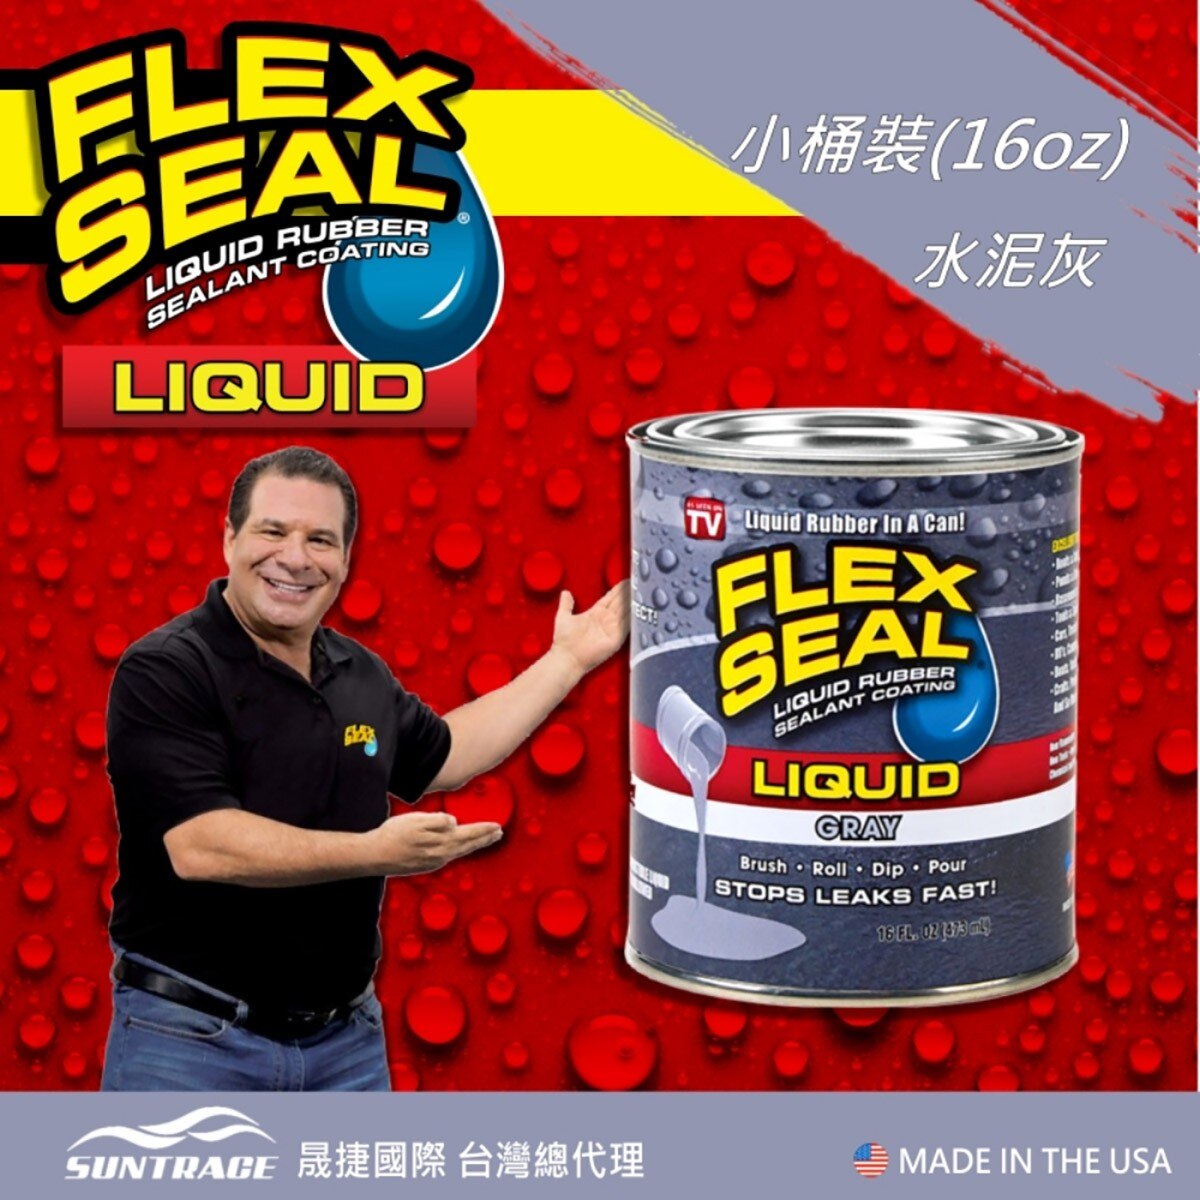 美國製FLEX SEAL LIQUID萬用止漏膠水泥灰，固化乾燥後呈彈性橡膠，富彈性，耐曬抗風化，不變質、不乾裂，止漏膠可滲入縫隙完美填補。